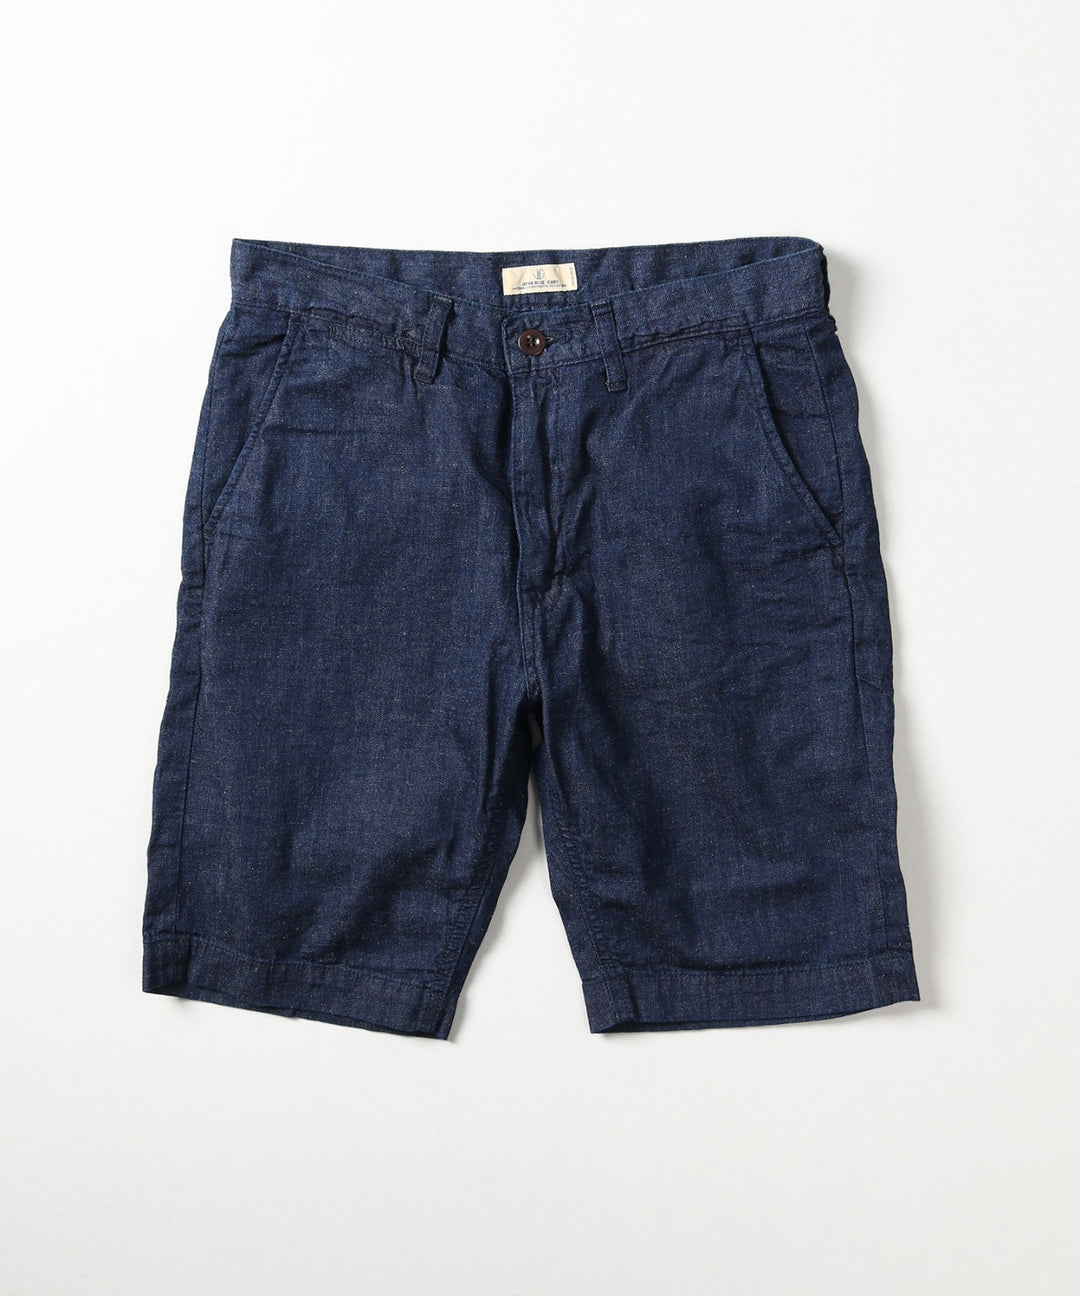 Japan Blue Jeans - 8oz Cotton Linen Denim Shorts